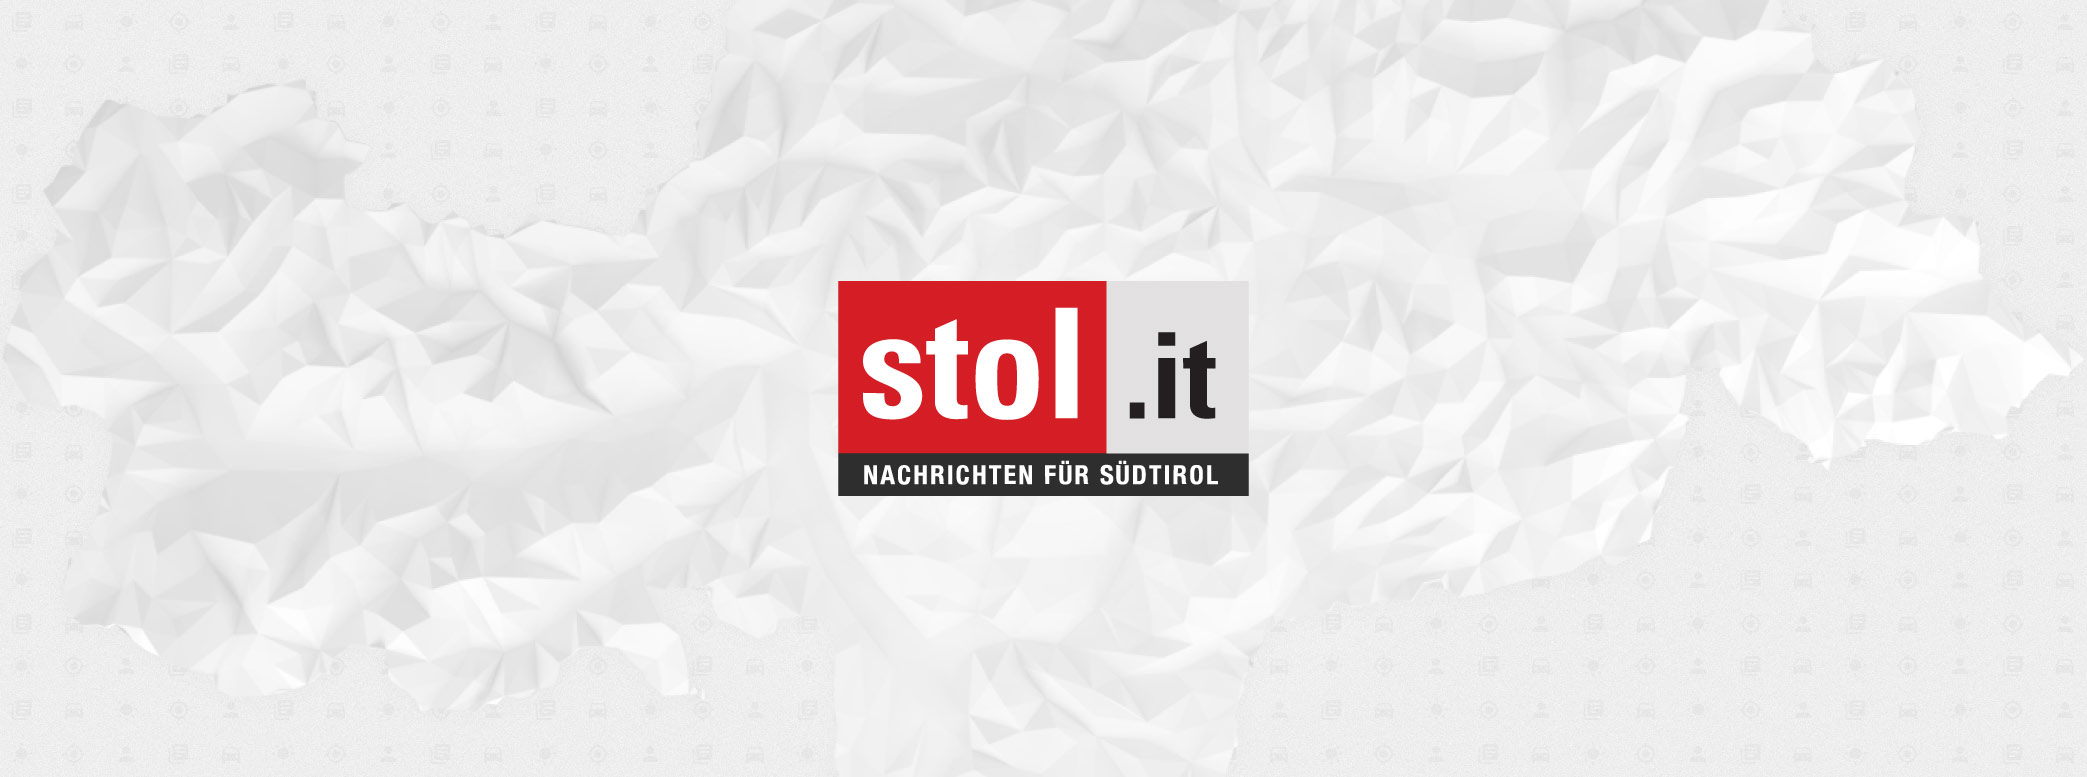 stol.it | Nachrichten aus Italien und der Welt